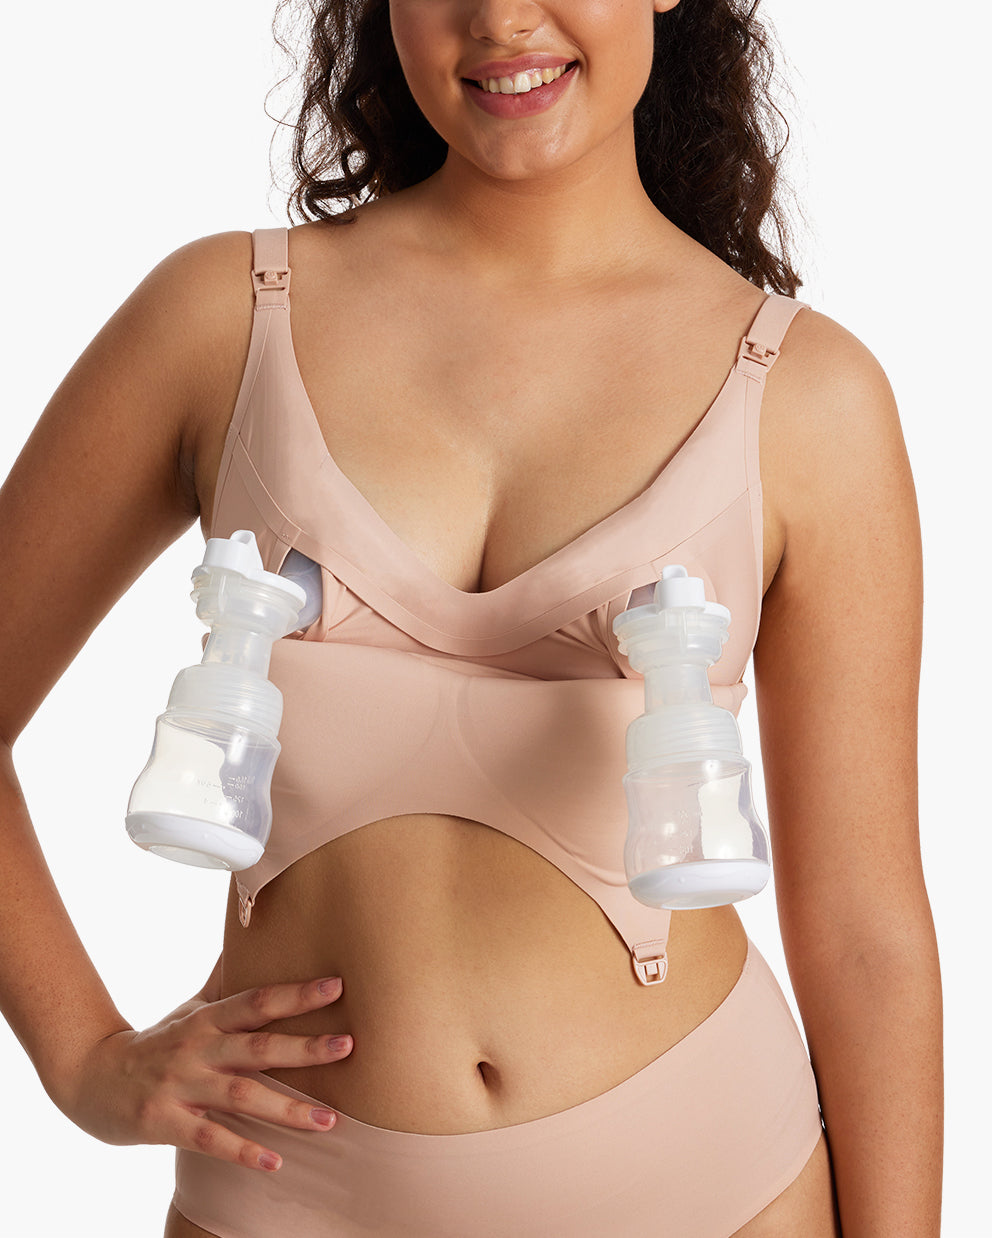 Momcozy 4-in-1 Wearable Breast Pump Bra YN12, Shop Today. Get it Tomorrow!